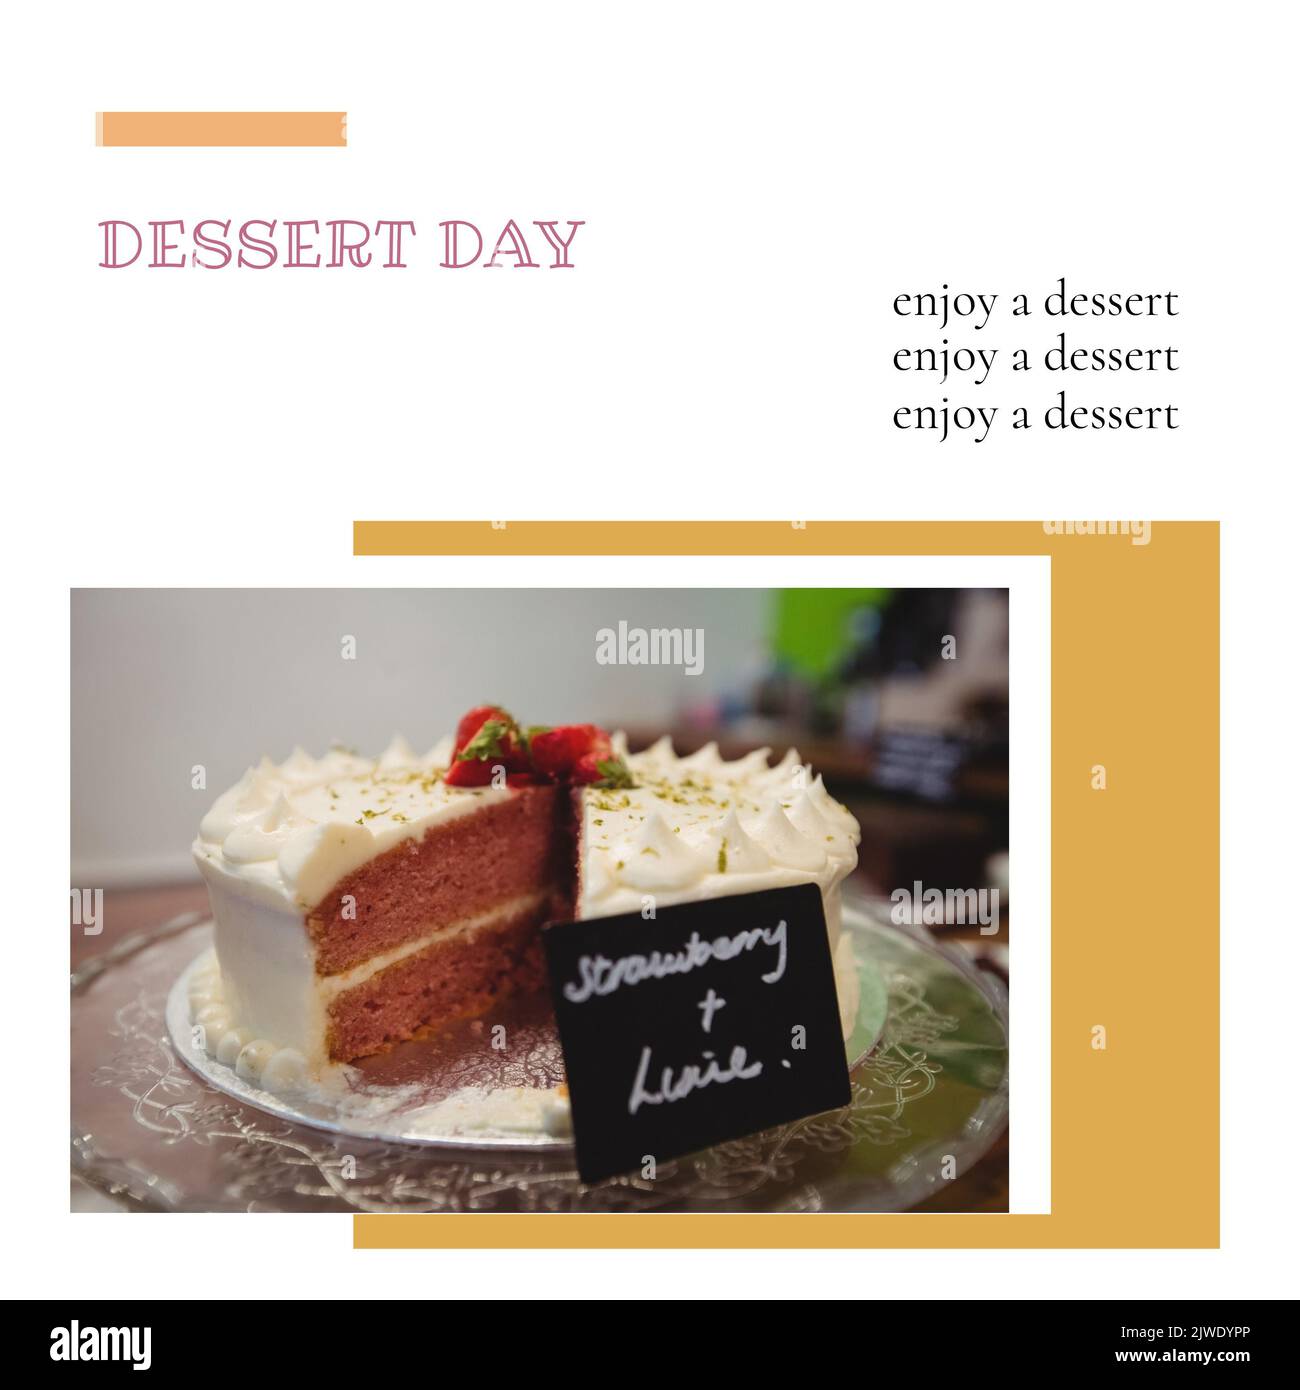 Zusammensetzung aus Desserttag mit einem Desserttext und verführerischen Kuchen mit Namensschild auf dem Tisch Stockfoto